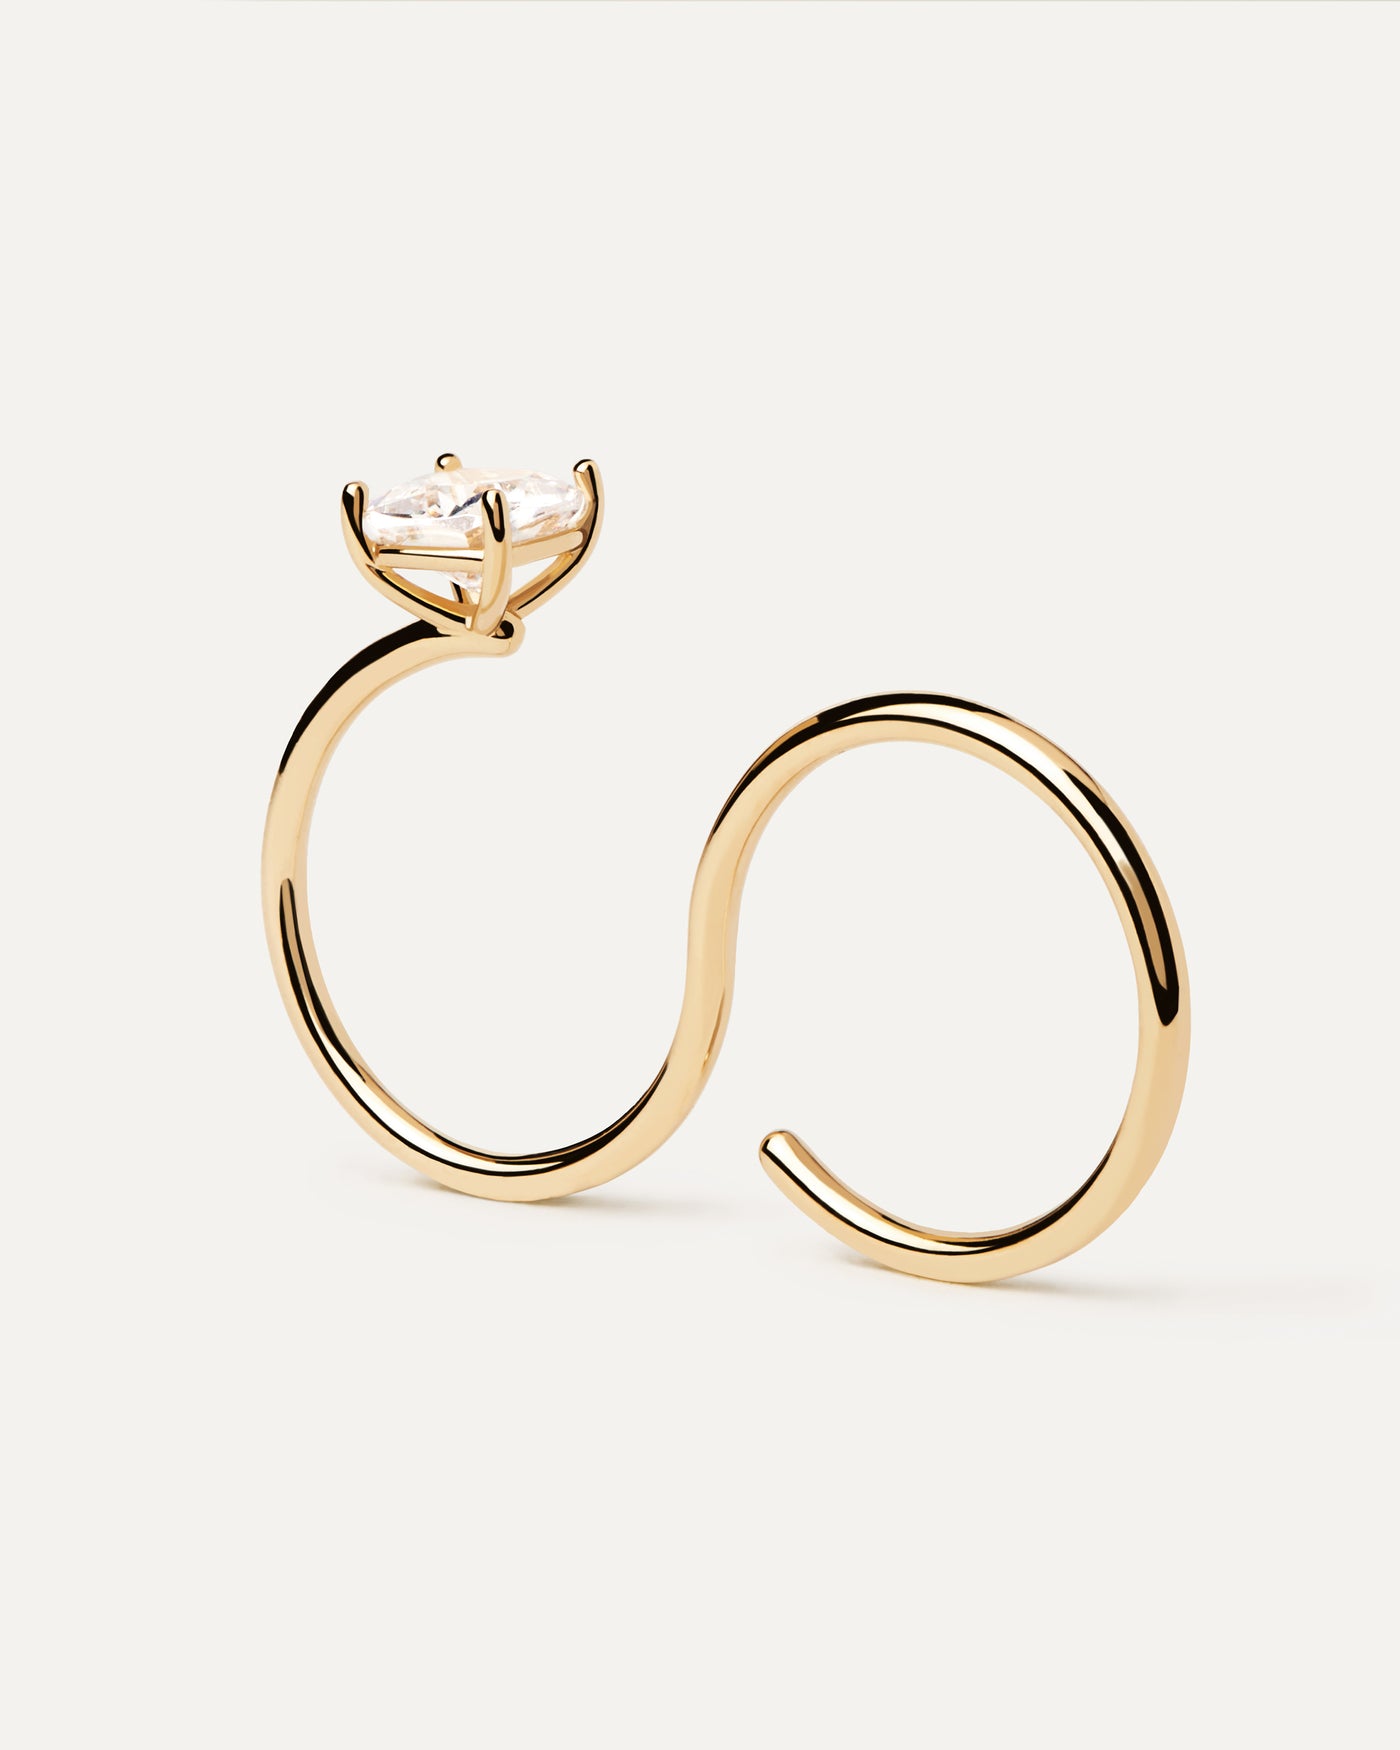 Sofia Zwei-Finger-Ring. Moderner vergoldeter offener Doppelring mit weißem Zirkonia. Erhalten Sie die neuesten Produkte von PDPAOLA. Geben Sie Ihre Bestellung sicher auf und erhalten Sie diesen Bestseller.